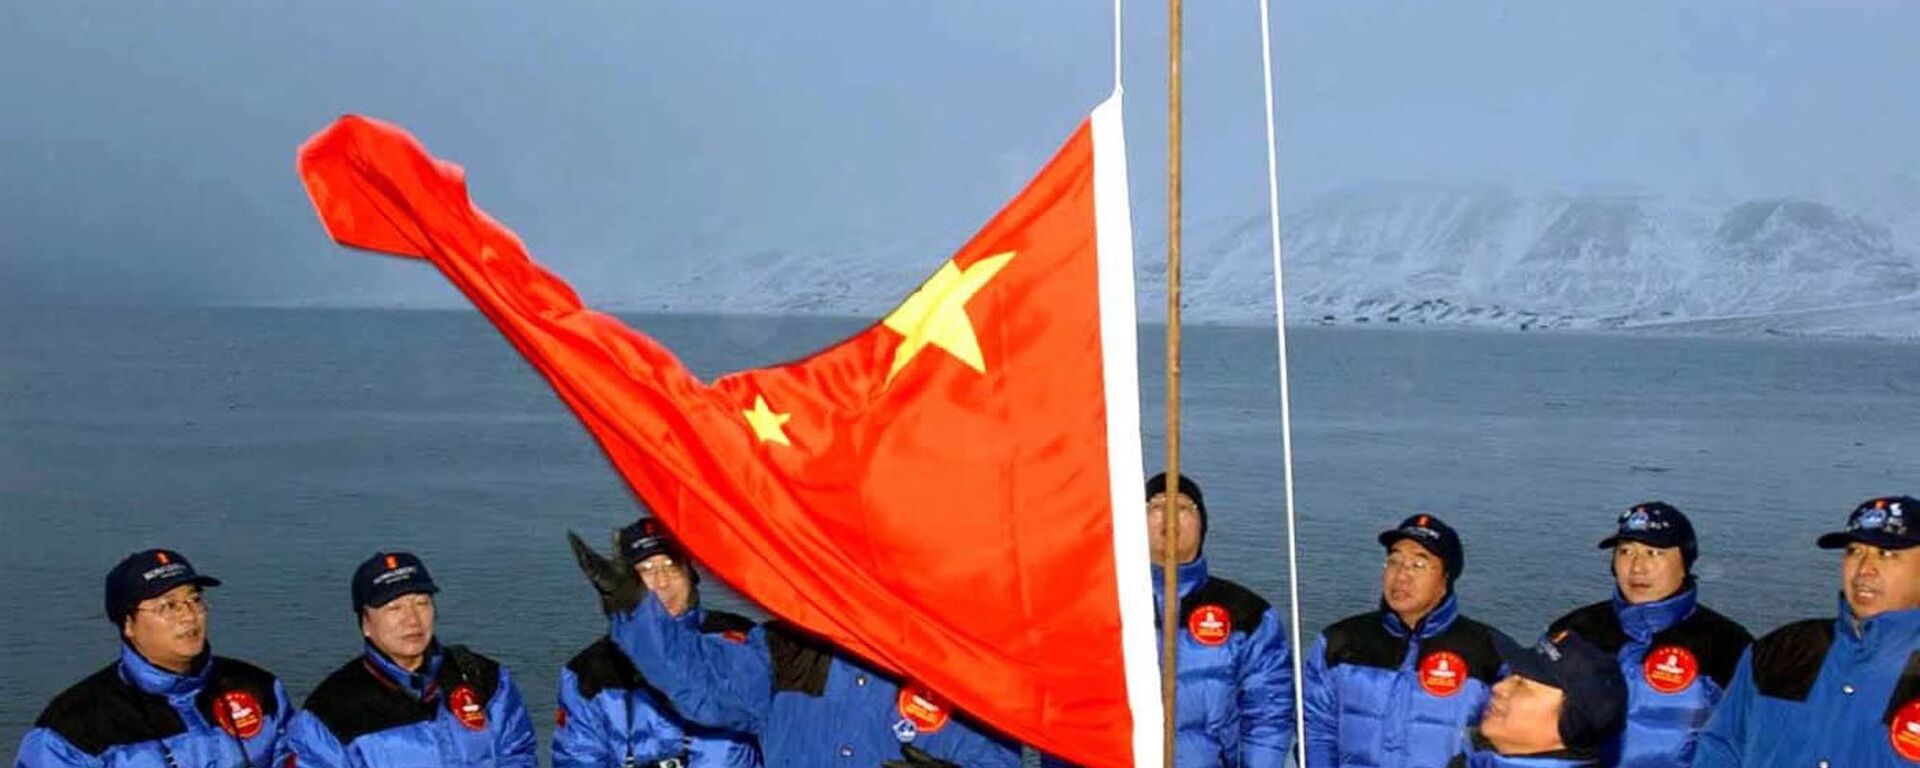 أعضاء بعثة صينية إلى القطب الشمالي يرفعون علم الصين في لونغييربين في جزيرة سبيتسبيرغن / سفالبارد، شمال النرويج، 31 أكتوبر 2001 - سبوتنيك عربي, 1920, 29.05.2023